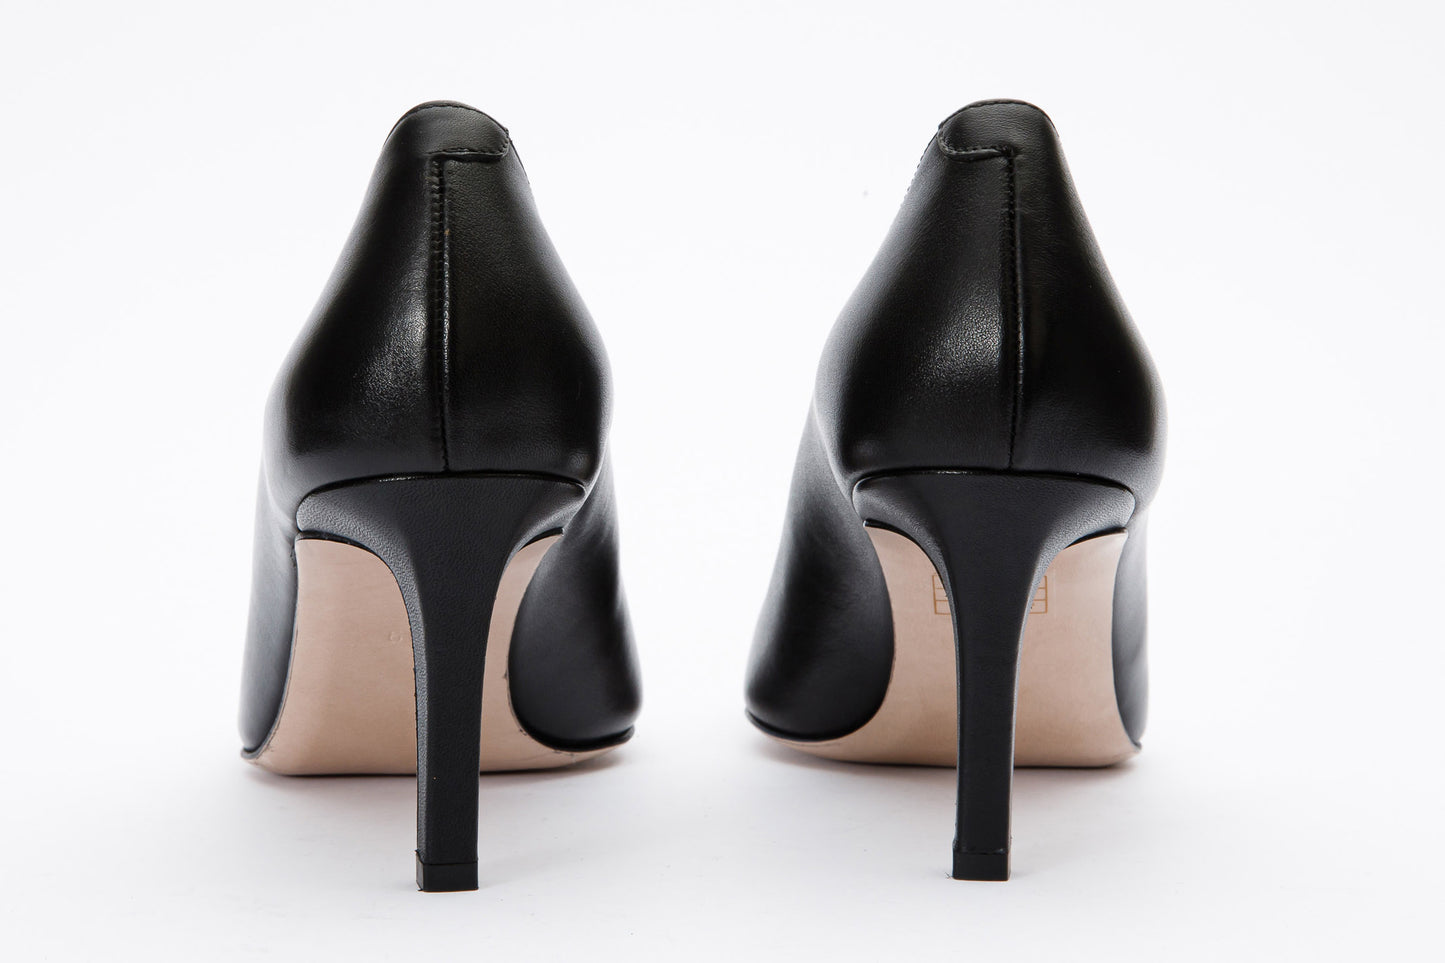 The Dilan Black Leather Pump Women Shoe